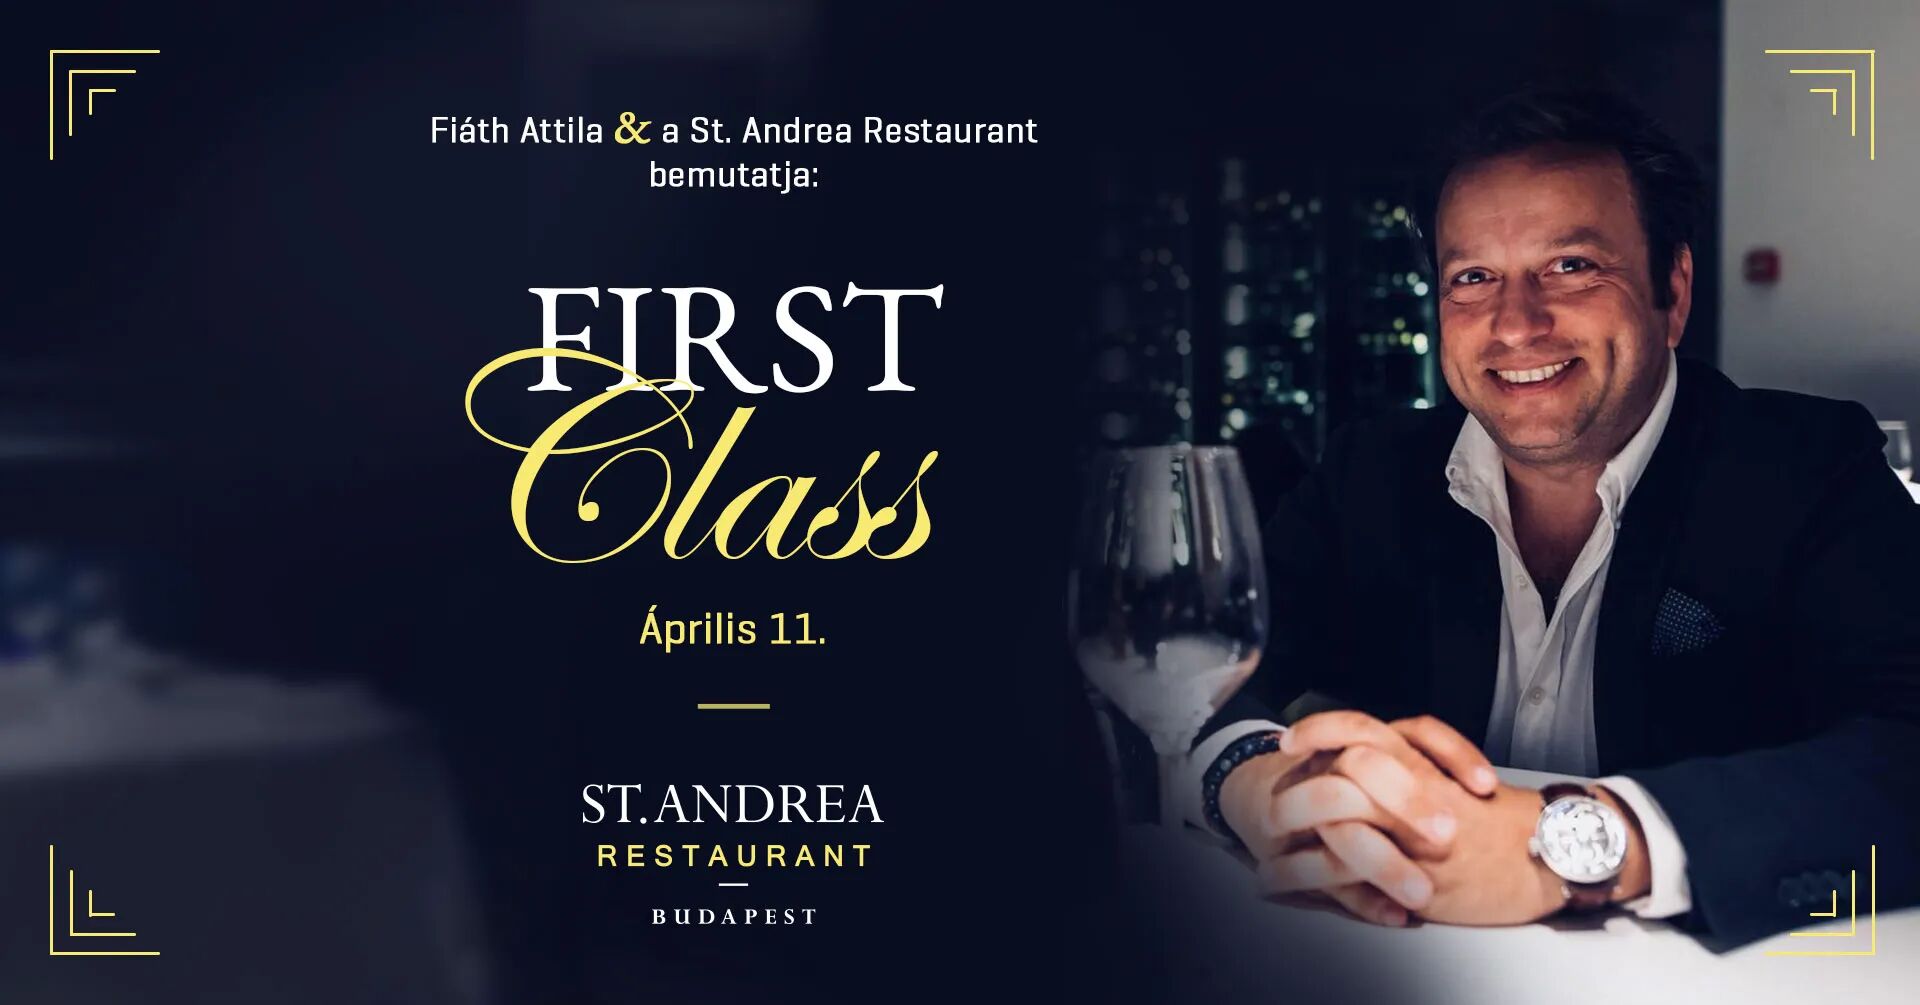 Fiáth Attila & a St. Andrea Restaurant bemutatja:  First Class 